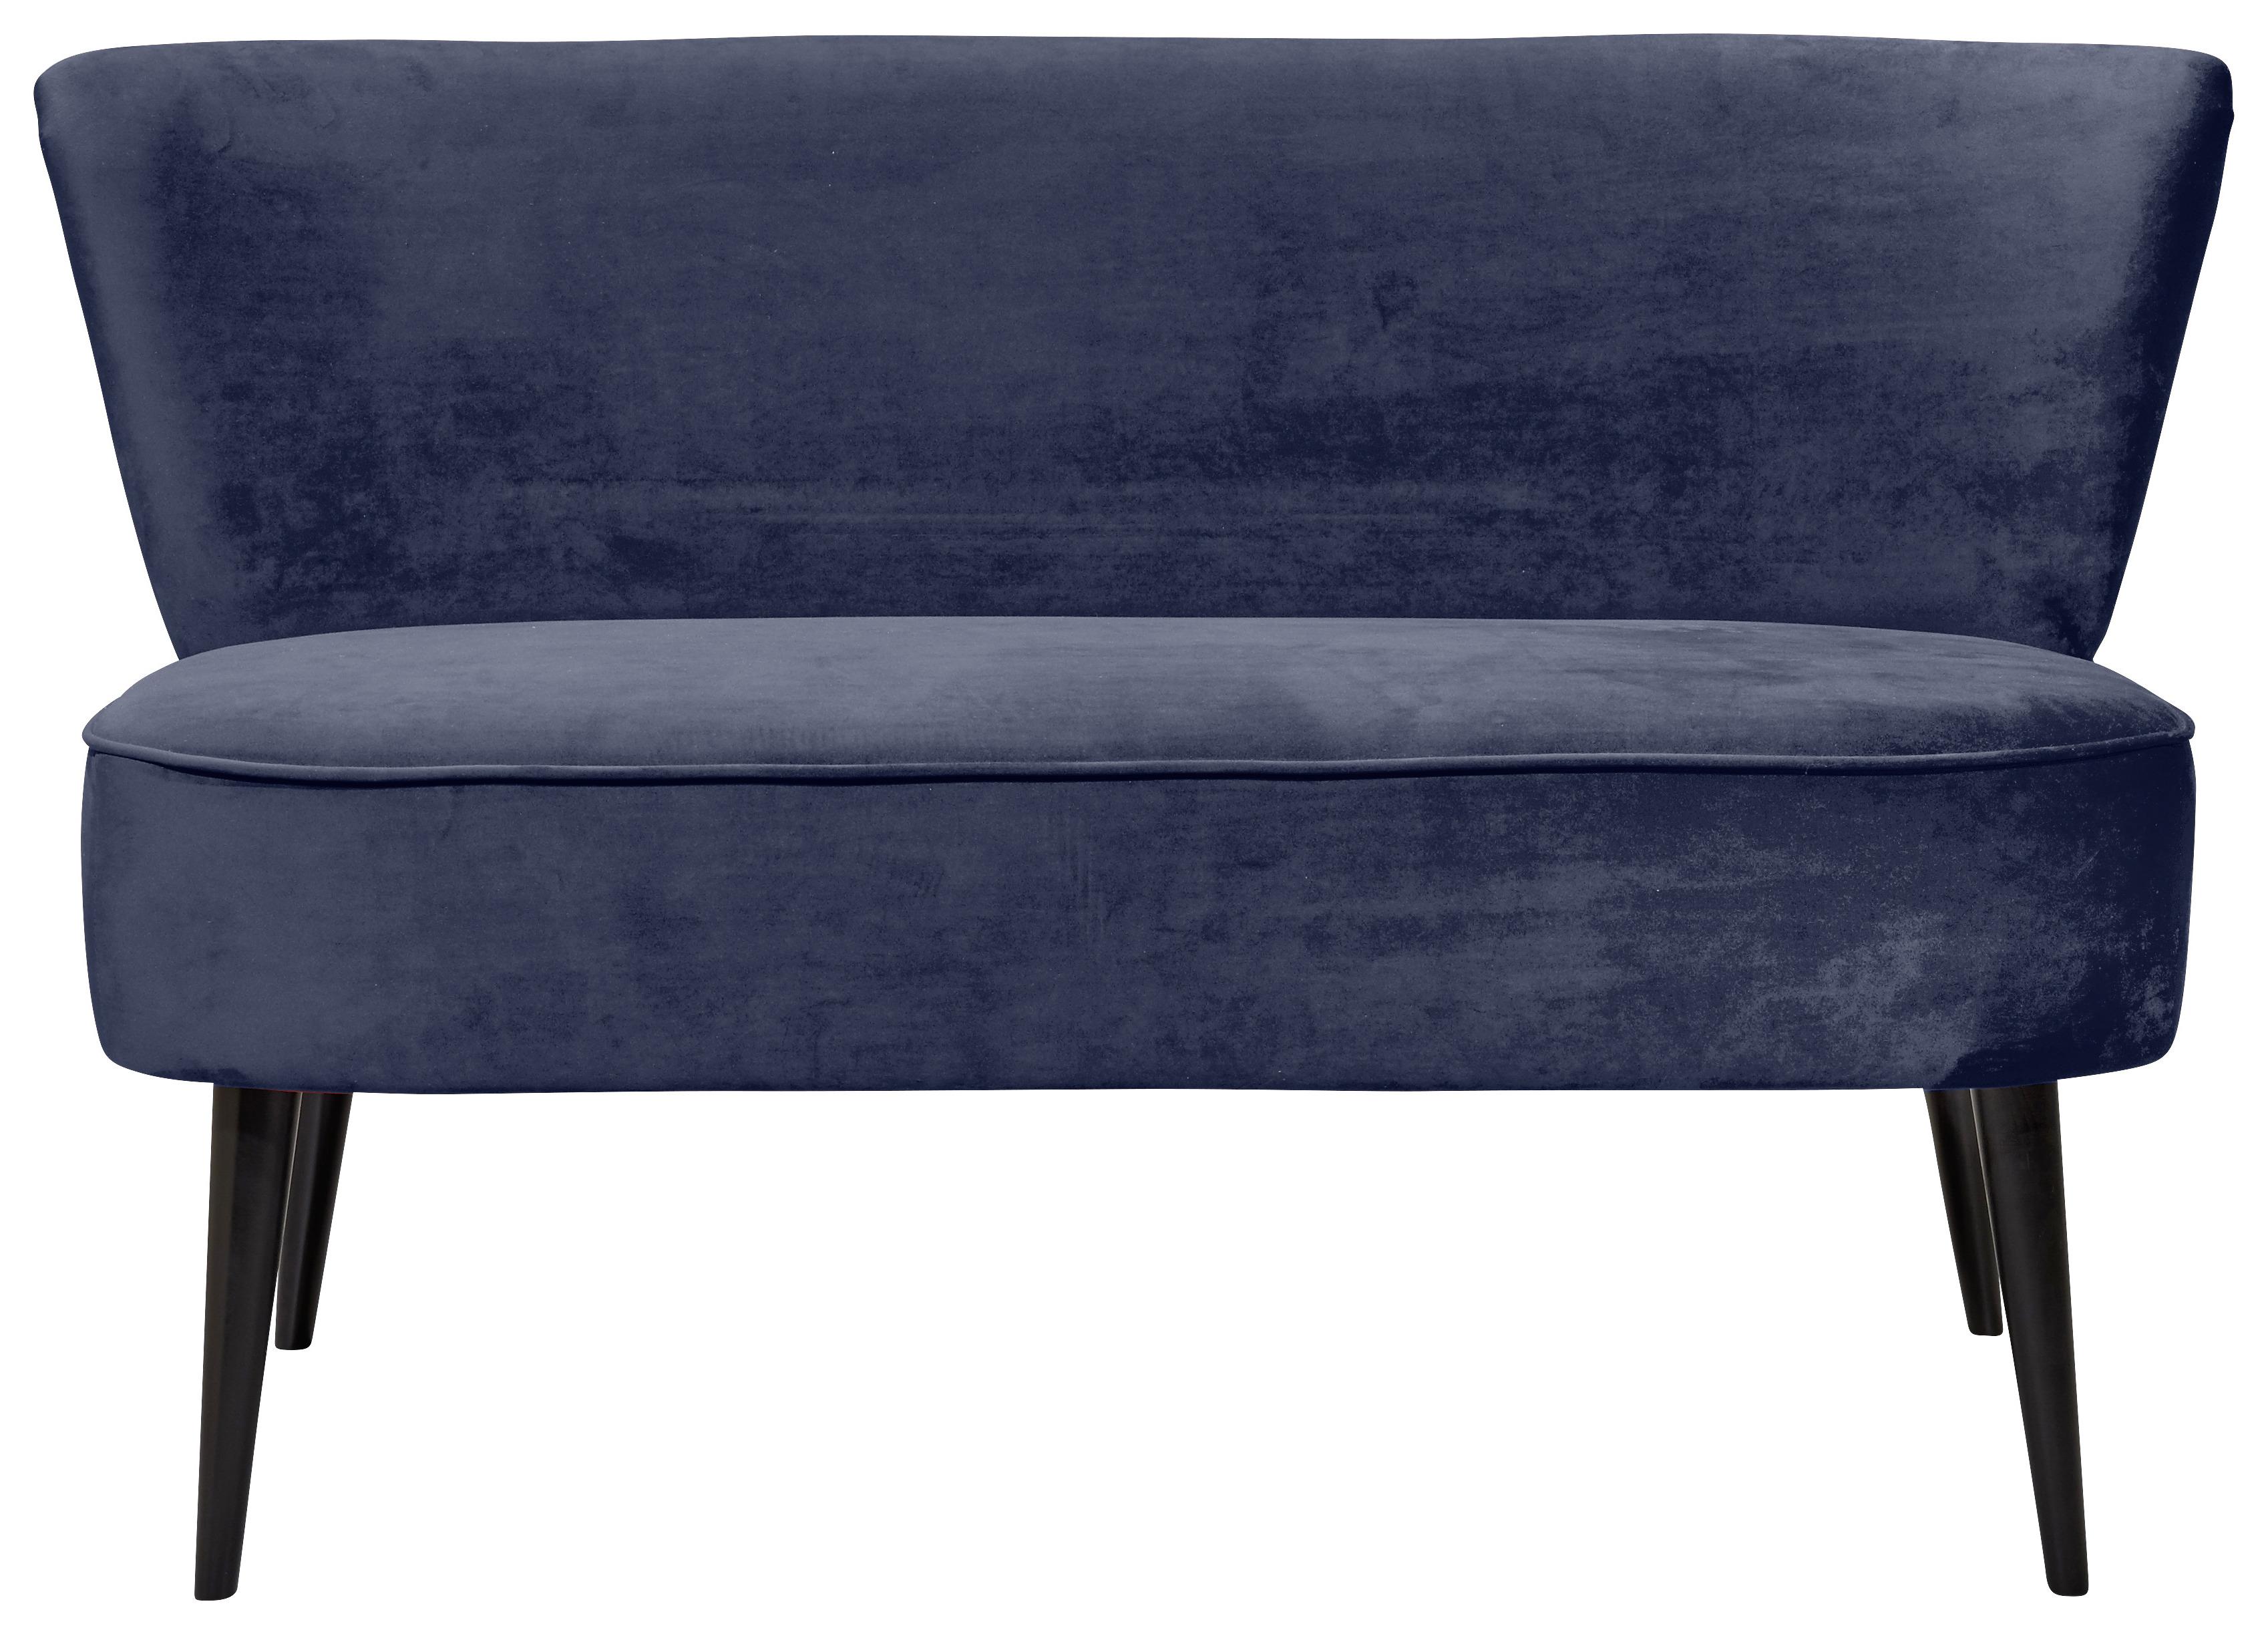 2místna Pohovka Lord-Trend Modrá - modrá/černá, Trend, kompozitní dřevo/textil (140/83/75cm) - MID.YOU